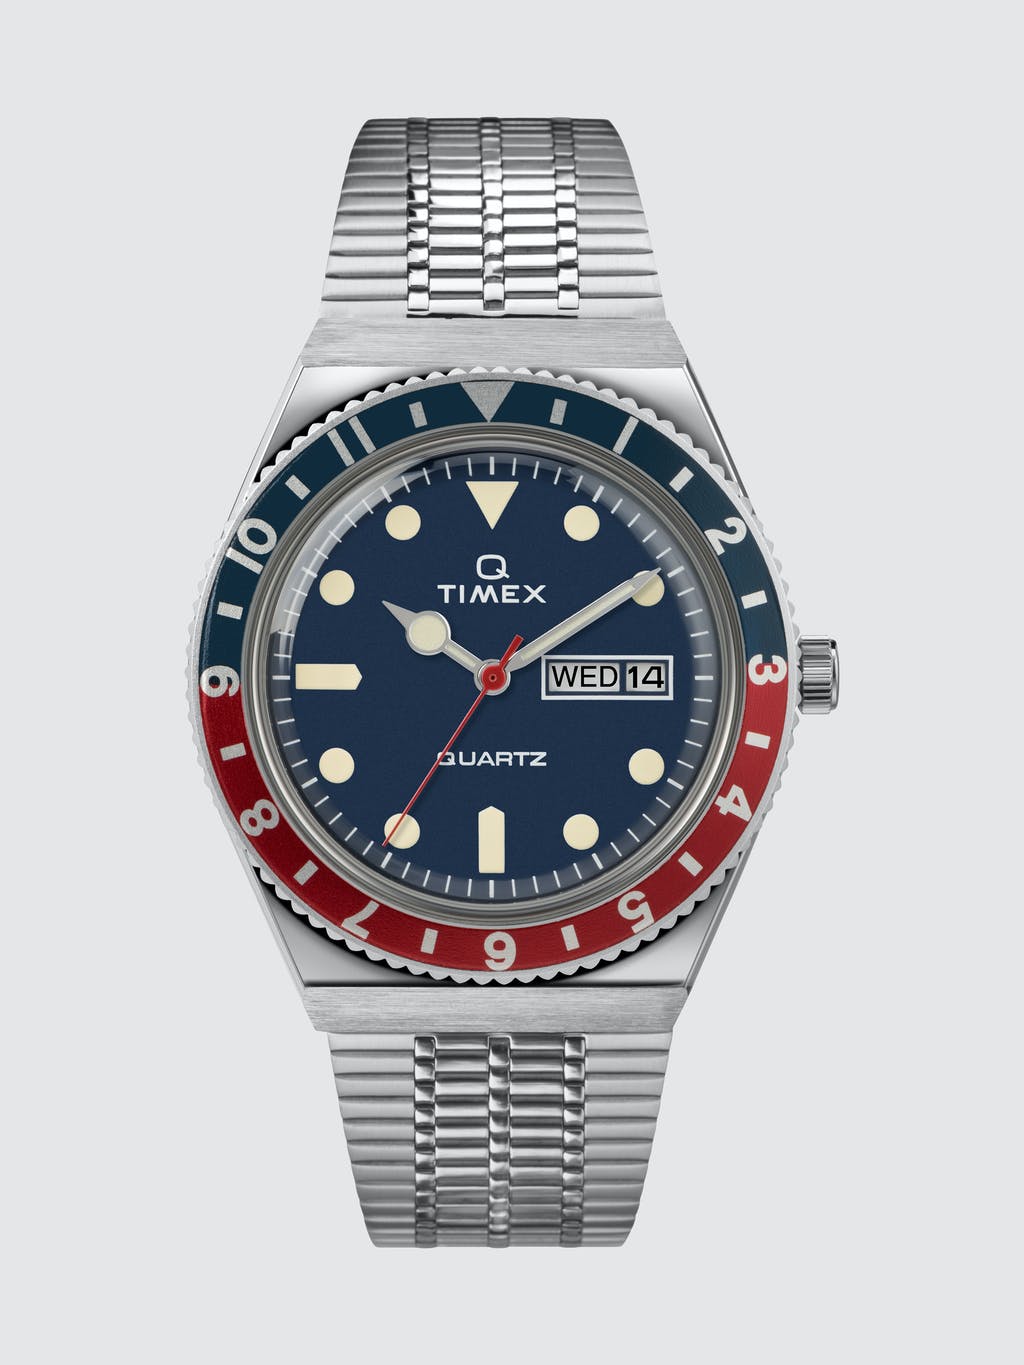 Q Timex Reissue 38mm Stainless Steel Watch